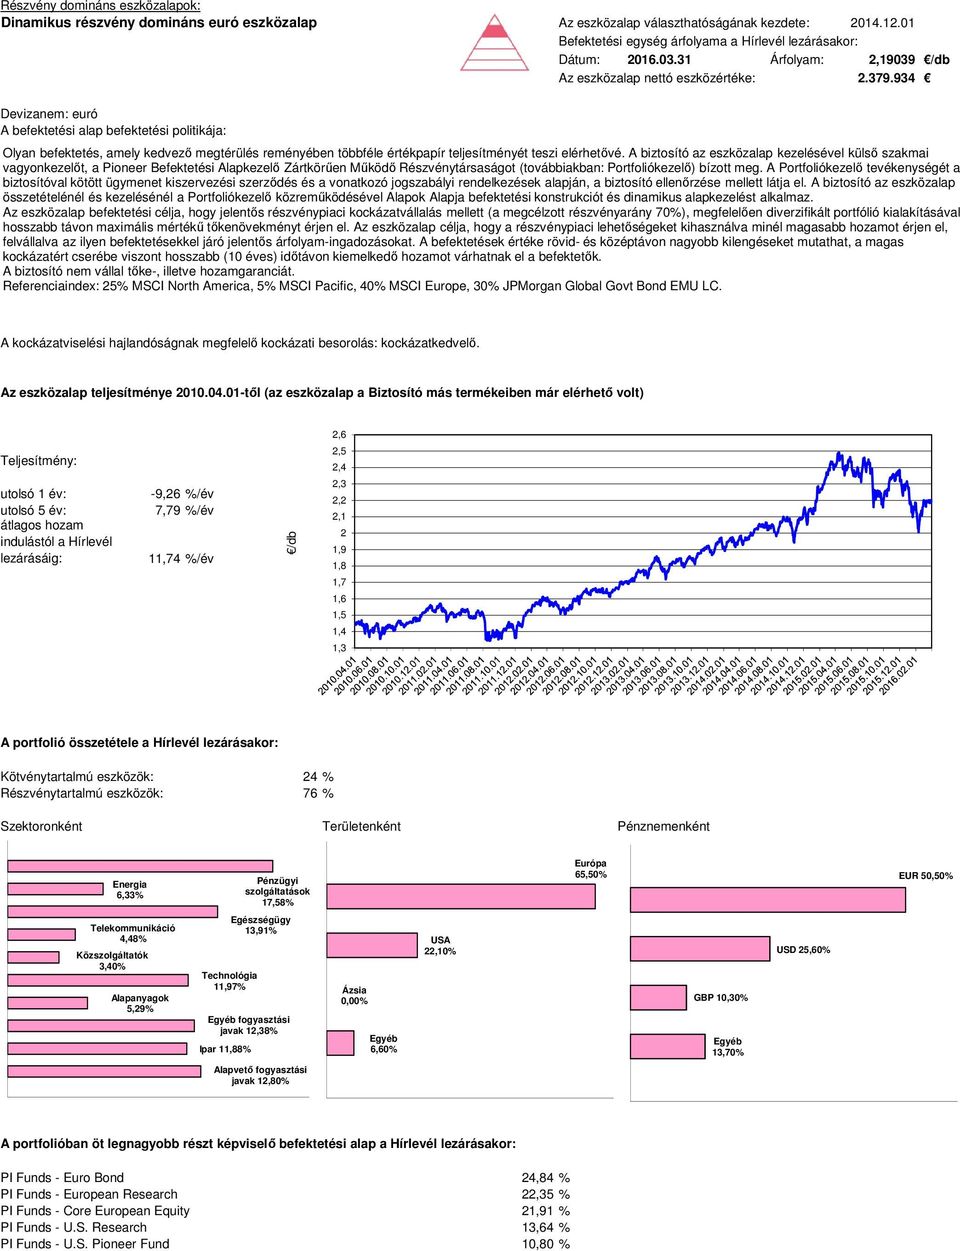 934 Devizanem: euró Az eszközalap befektetési célja, hogy jelentős részvénypiaci kockázatvállalás mellett (a megcélzott részvényarány 70%), megfelelően diverzifikált portfólió kialakításával hosszabb